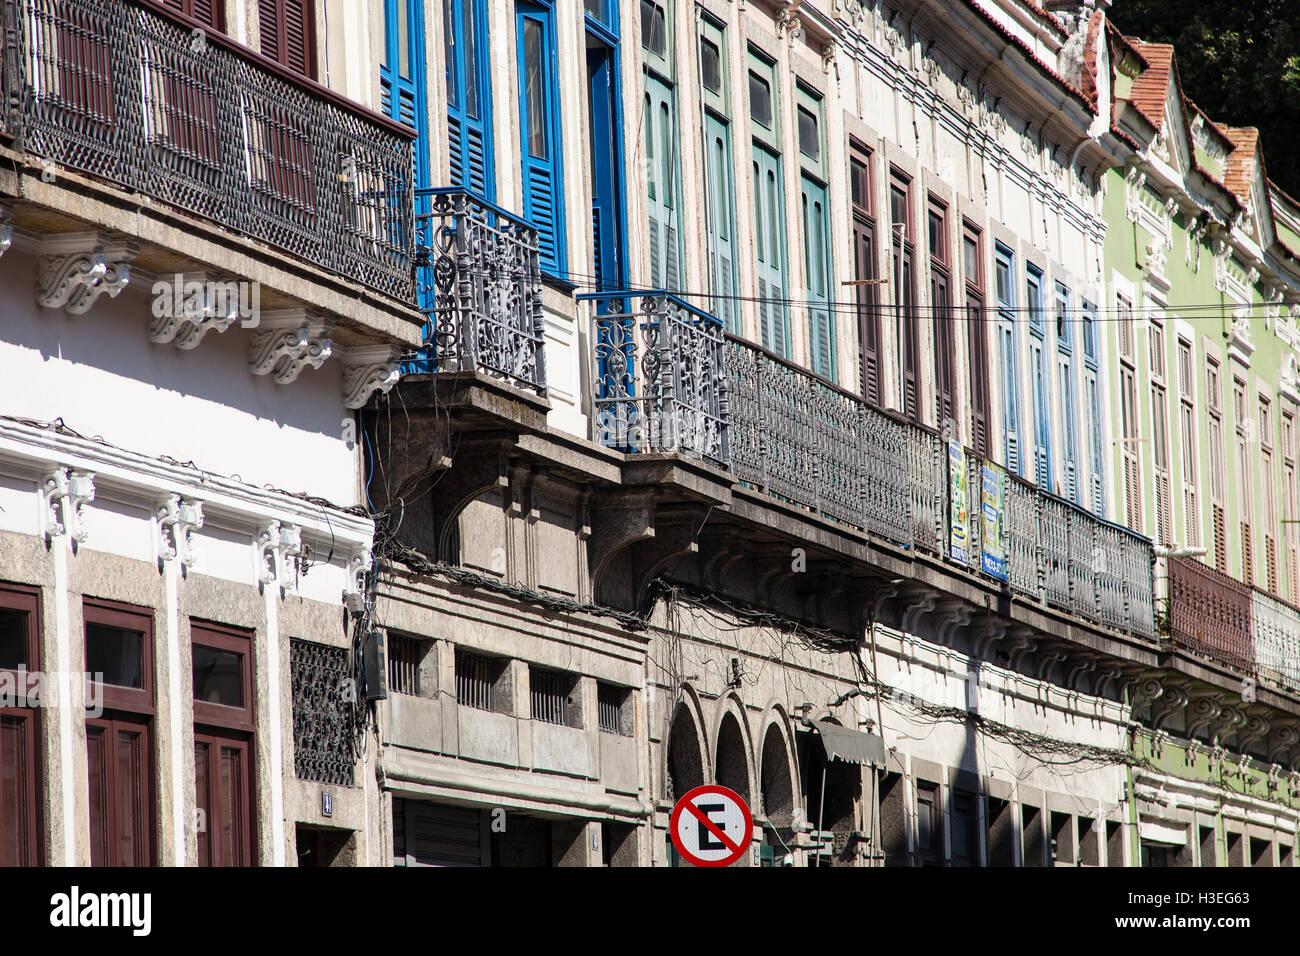 Conserve di sobrados, due o più storie antiche case da coloniale e periodi imperiale in Brasile a Rua do Senado ( Senato street ) nel centro di Rio de Janeiro, come parte della città culturale corredor ( corridoio culturale ). Foto Stock